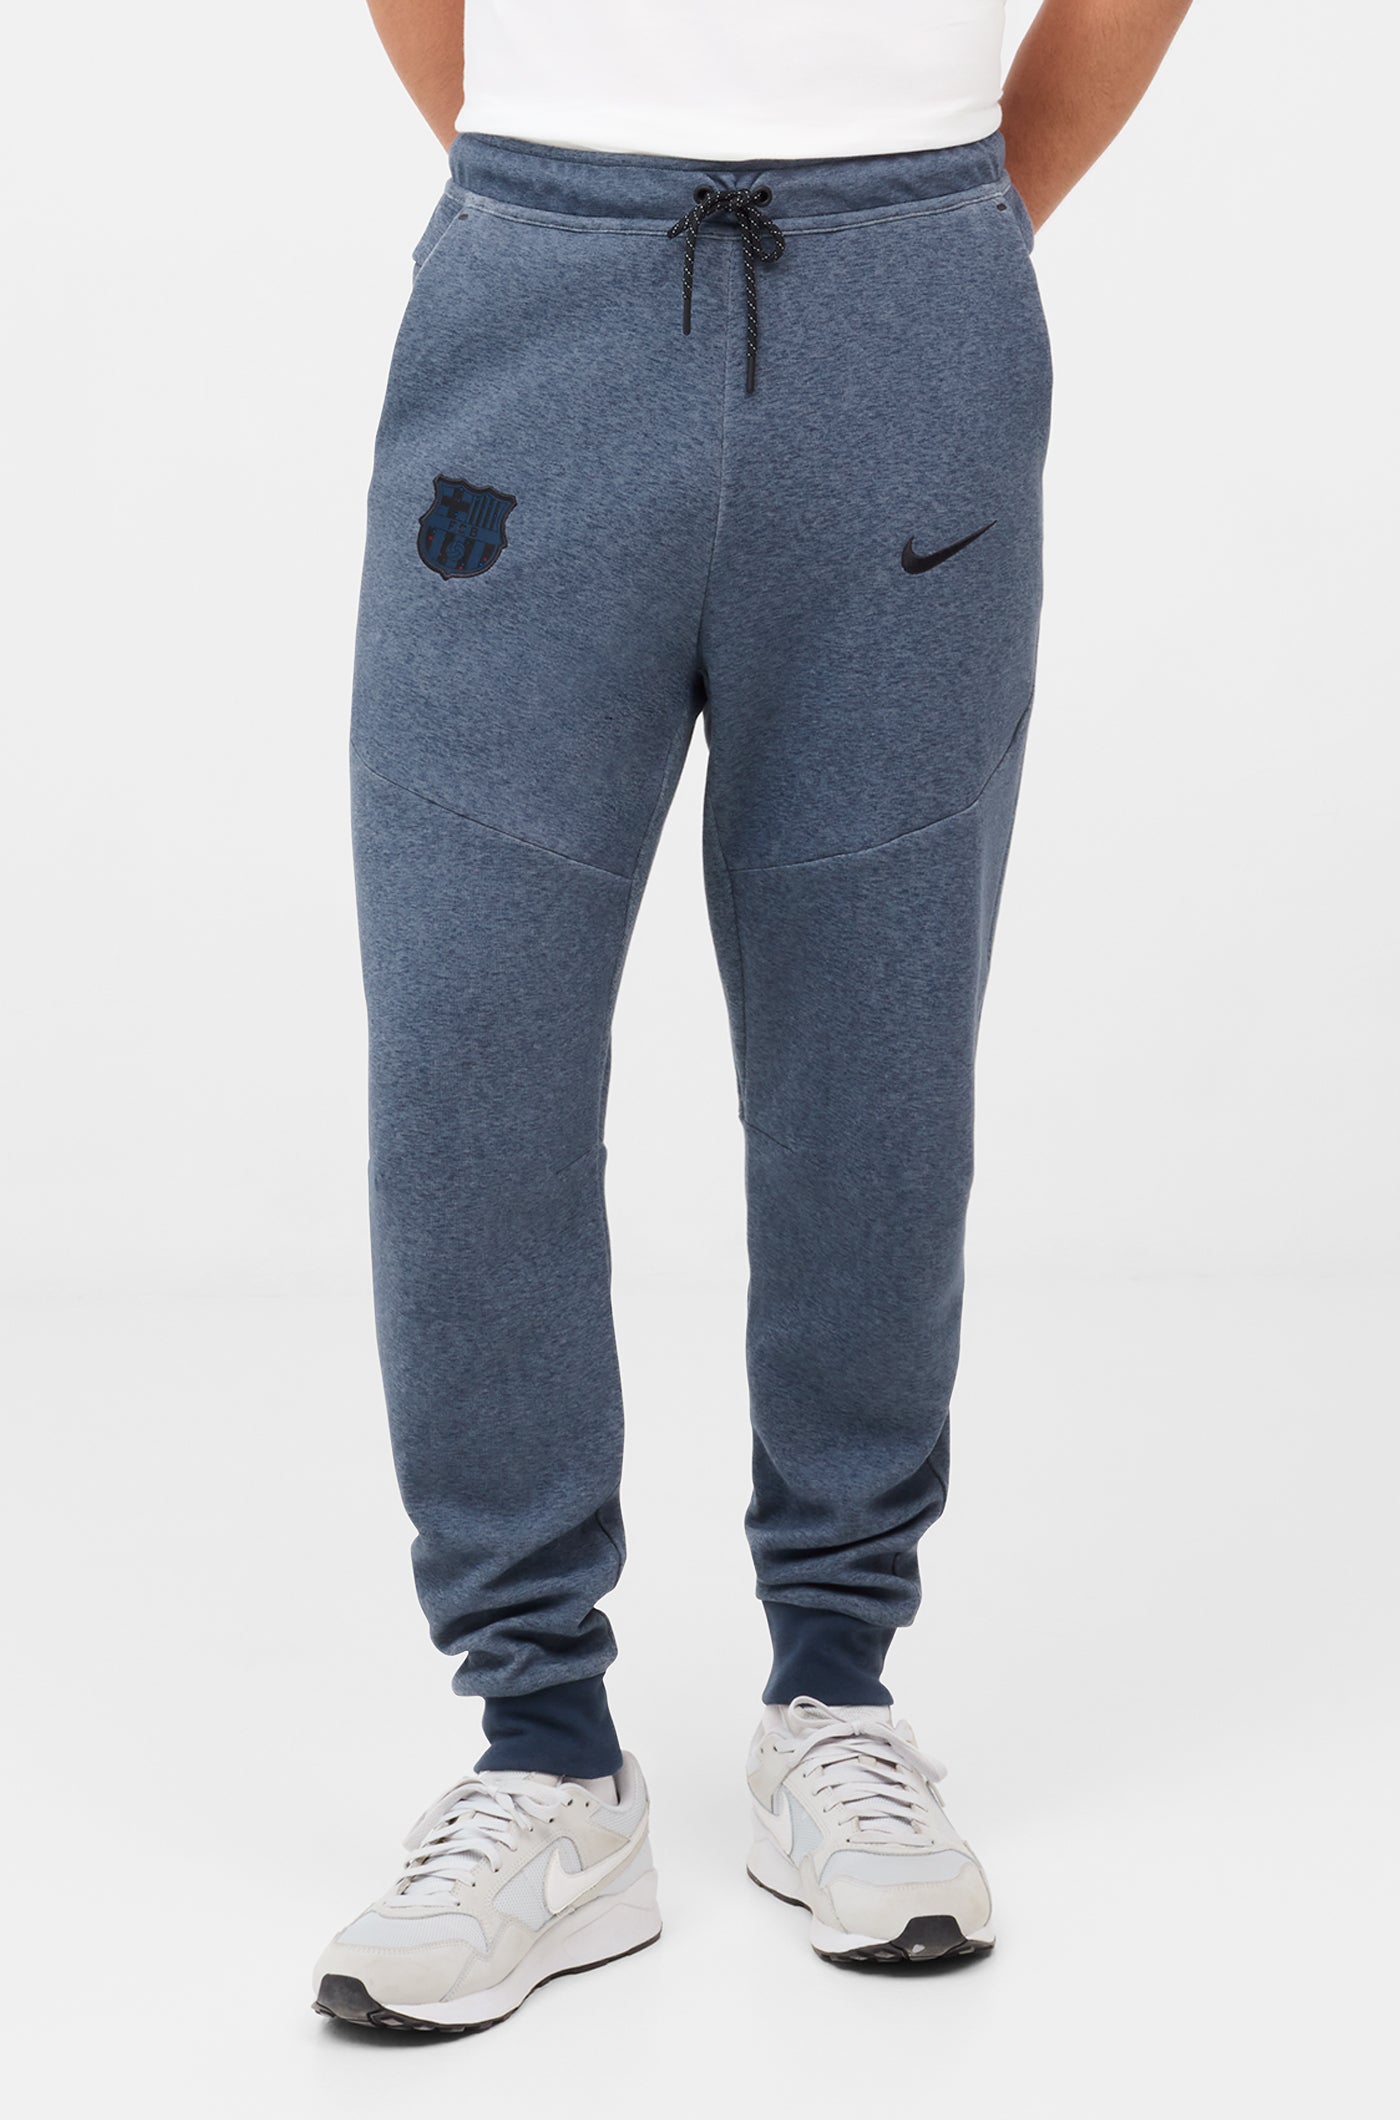 Pantalon tech bleu Barça Nike